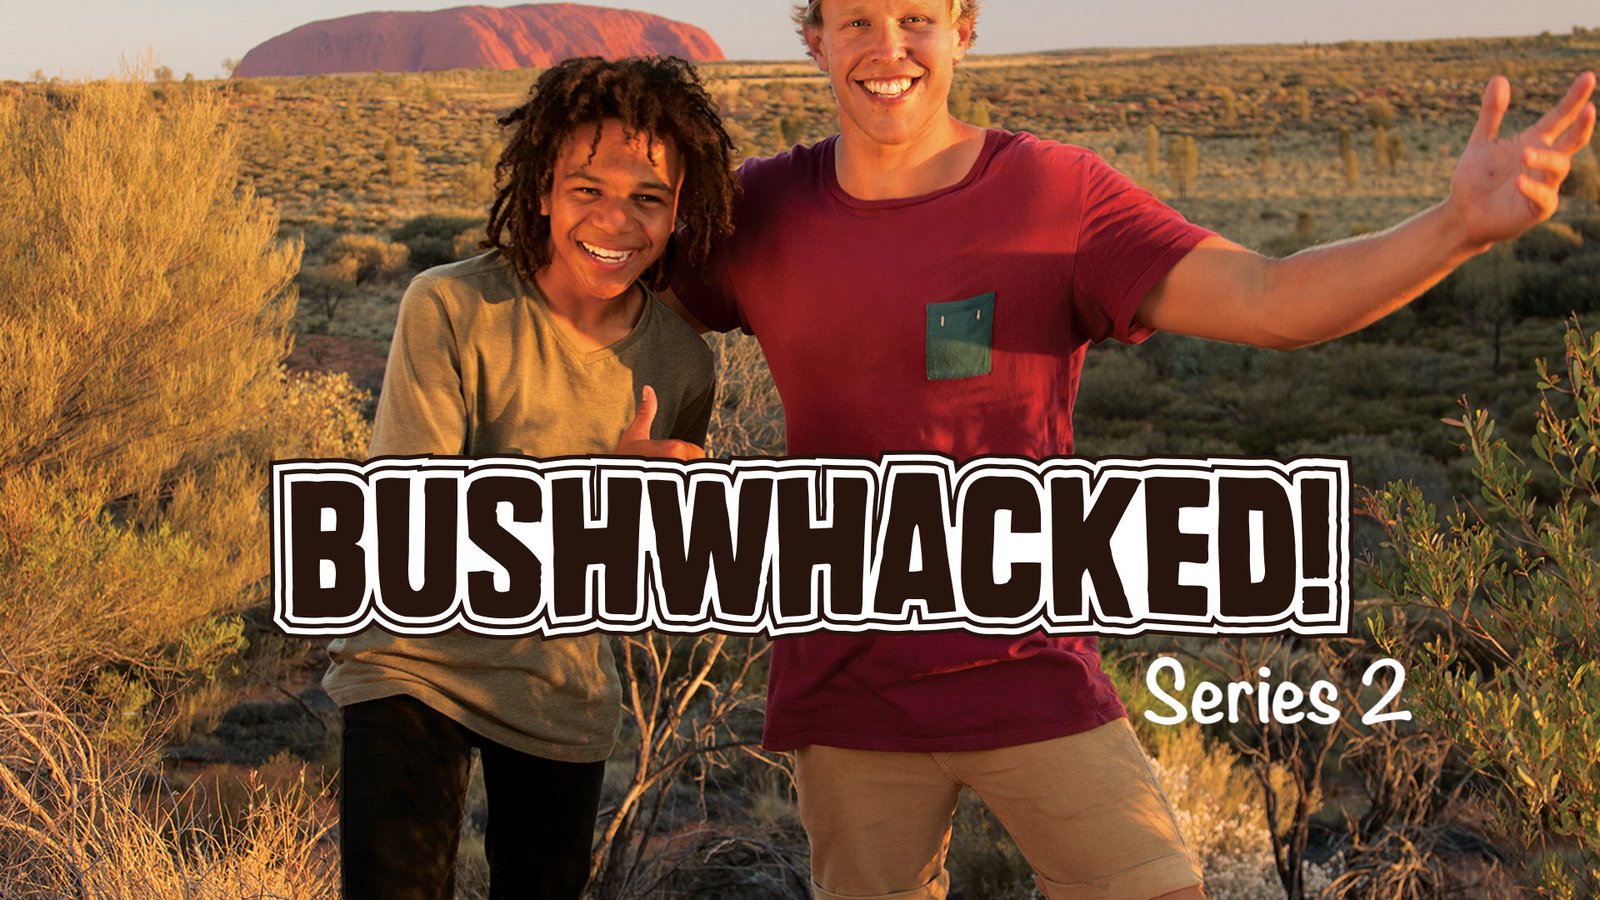 Bushwhacked! - Series 2